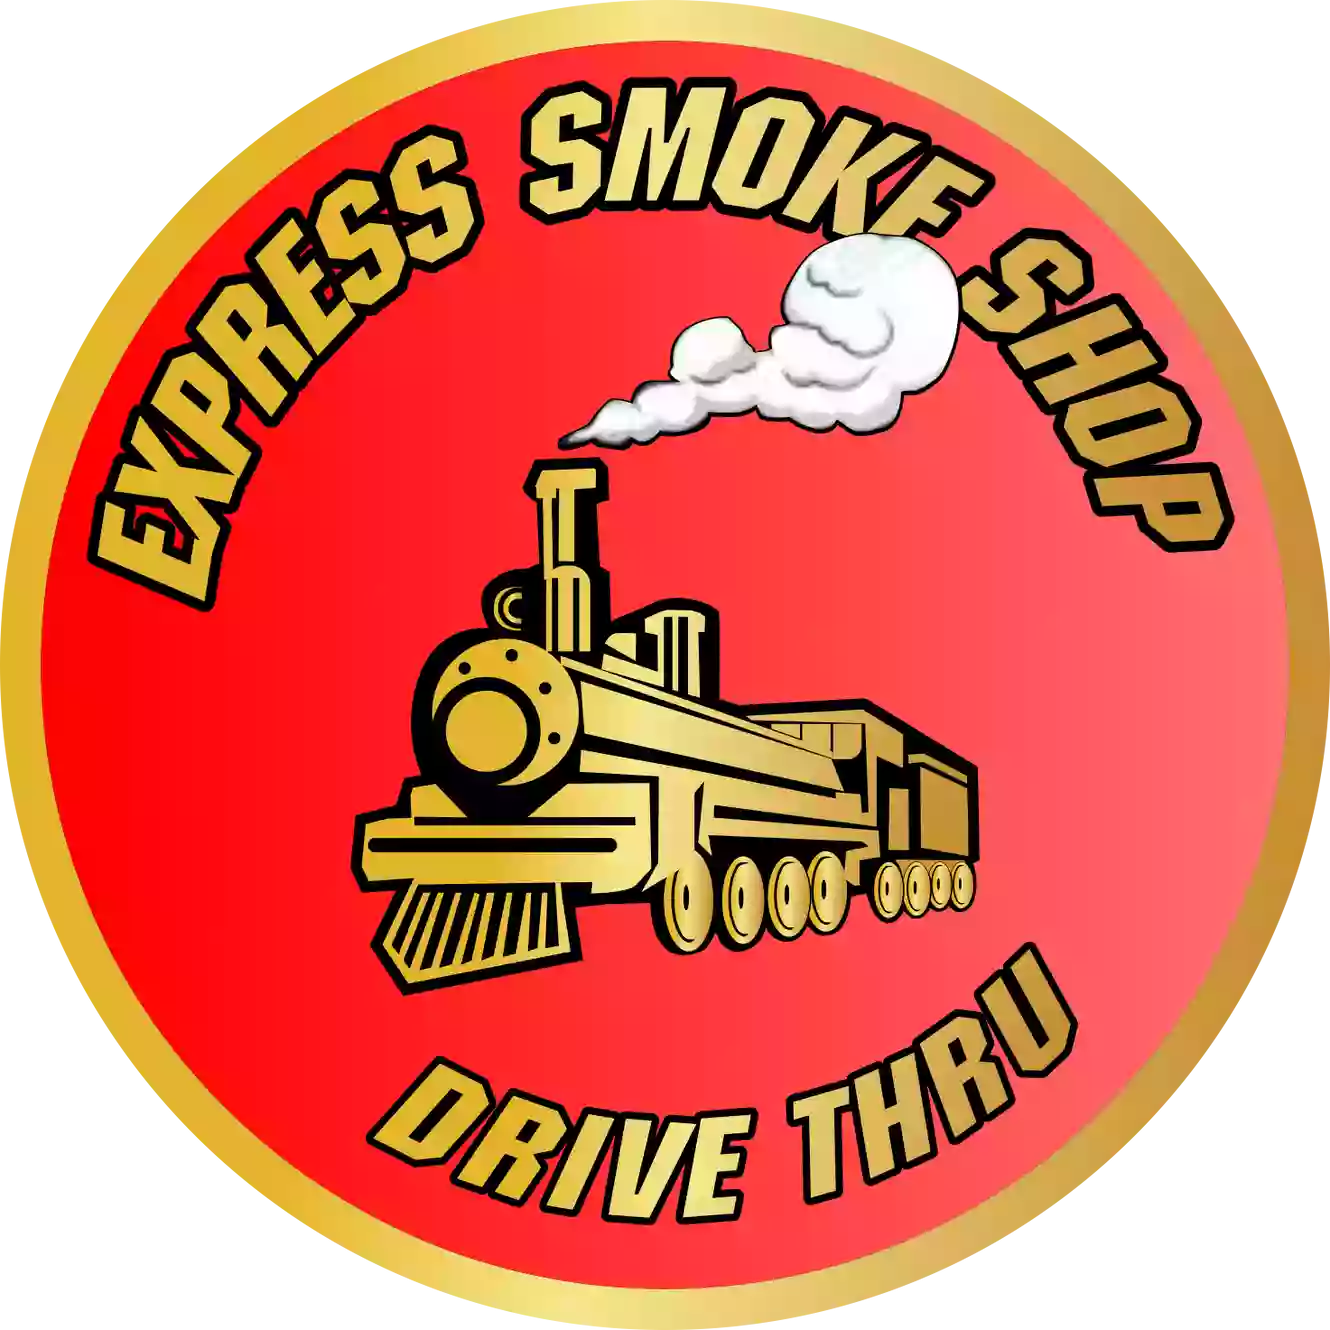 Express Smoke Shop (Allentown)